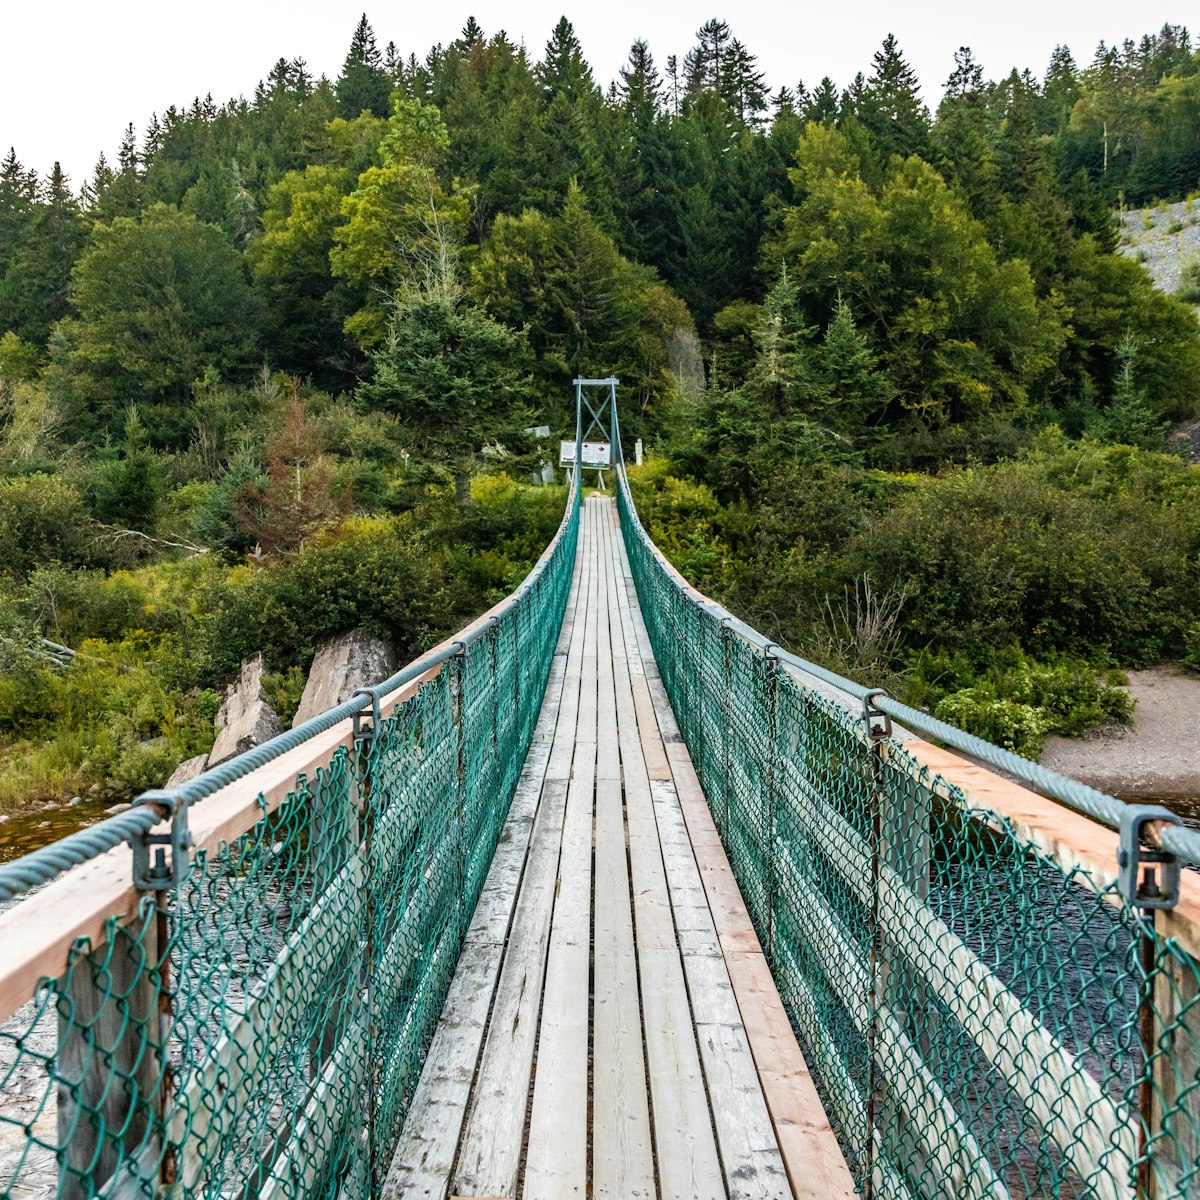 Big Salmon River Suspension Bridge view in Fundy national park Canada; Shutterstock ID 2205277983; full: 65050; gl: 65050; netsuite: poi; your: Barbara Di Castro
2205277983